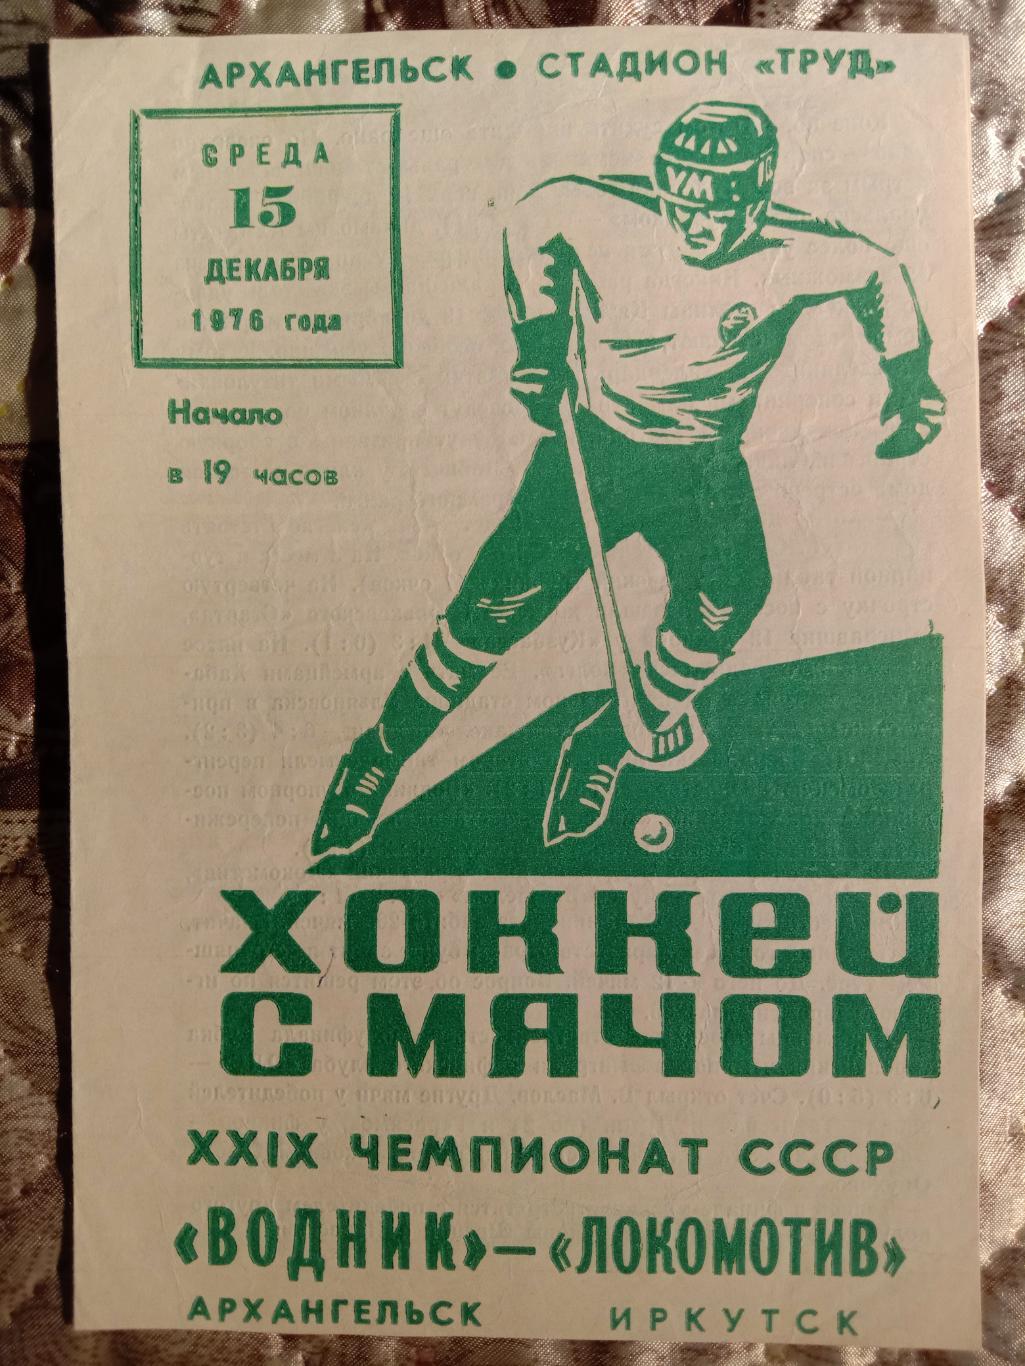 Водник Архангельск - Локомотив Иркутск. 15 декабря 1976 года.